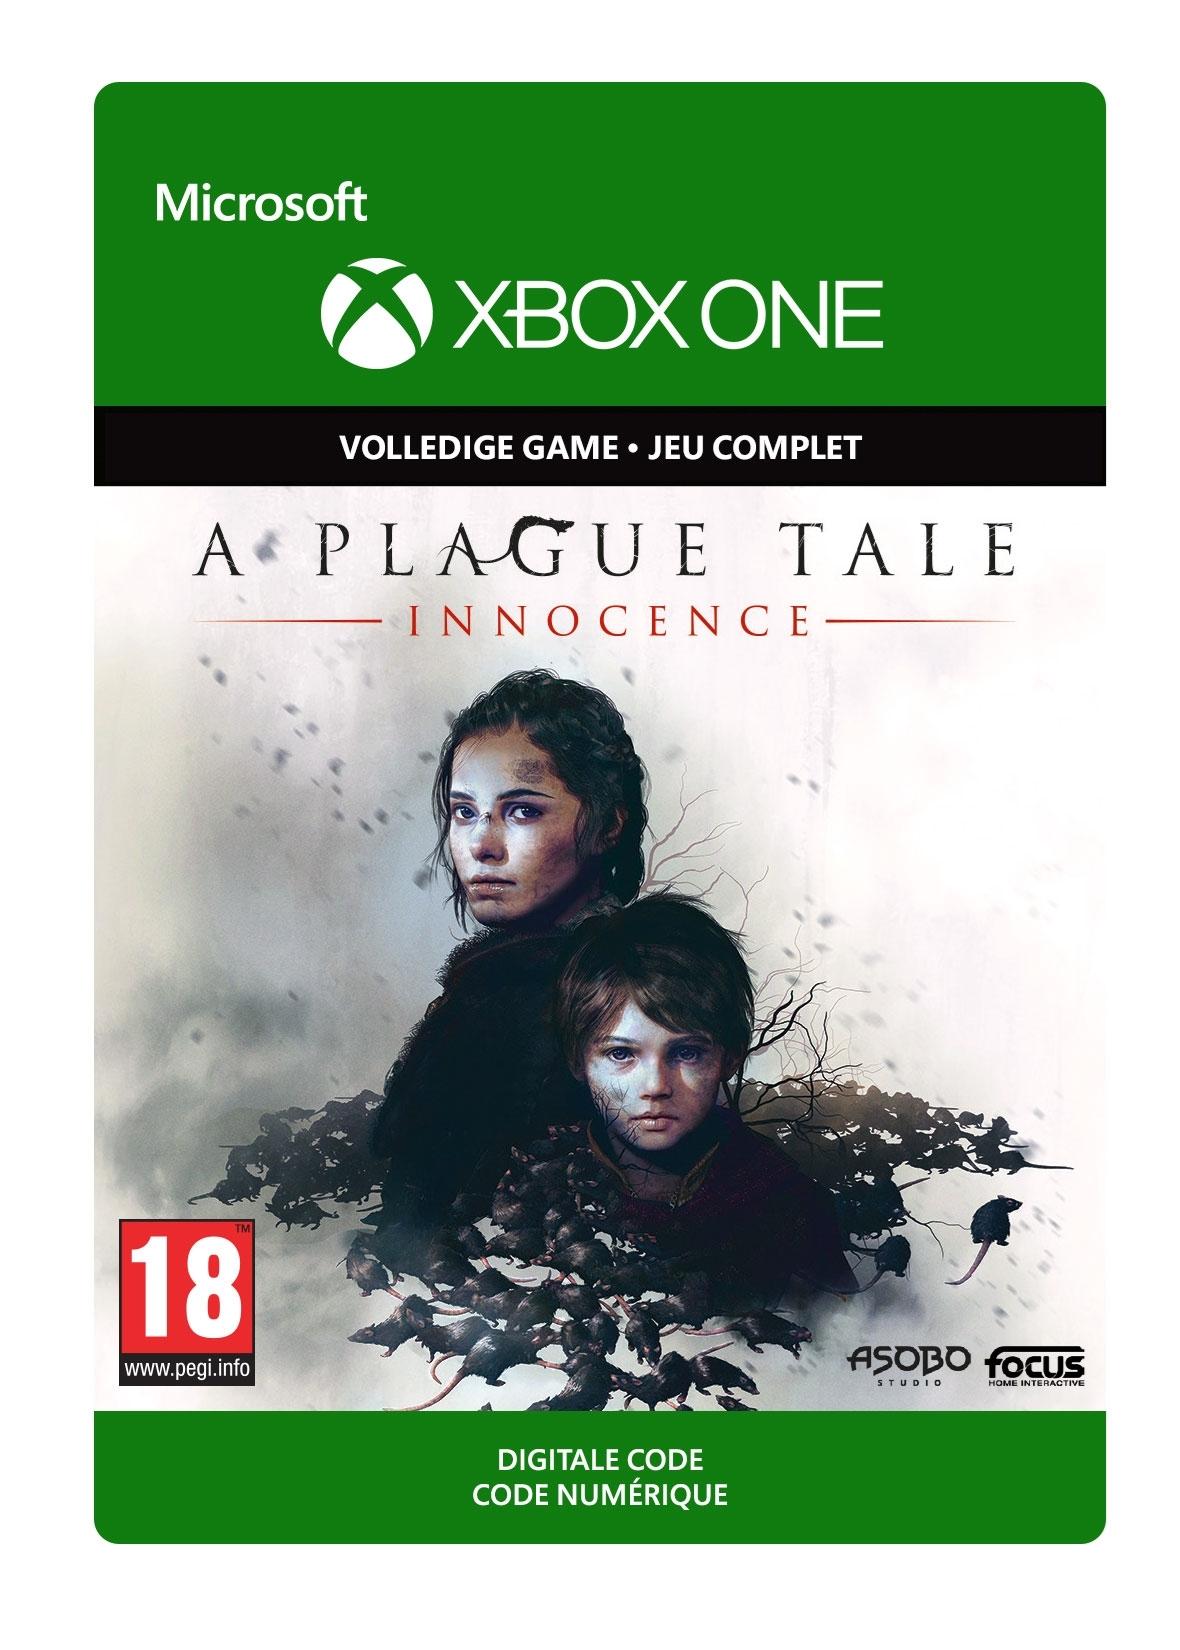 A Plague Tale: Innocence - Xbox One - Game | G3Q-00704 (03de2604-a6a8-434e-a401-bb577108748e)